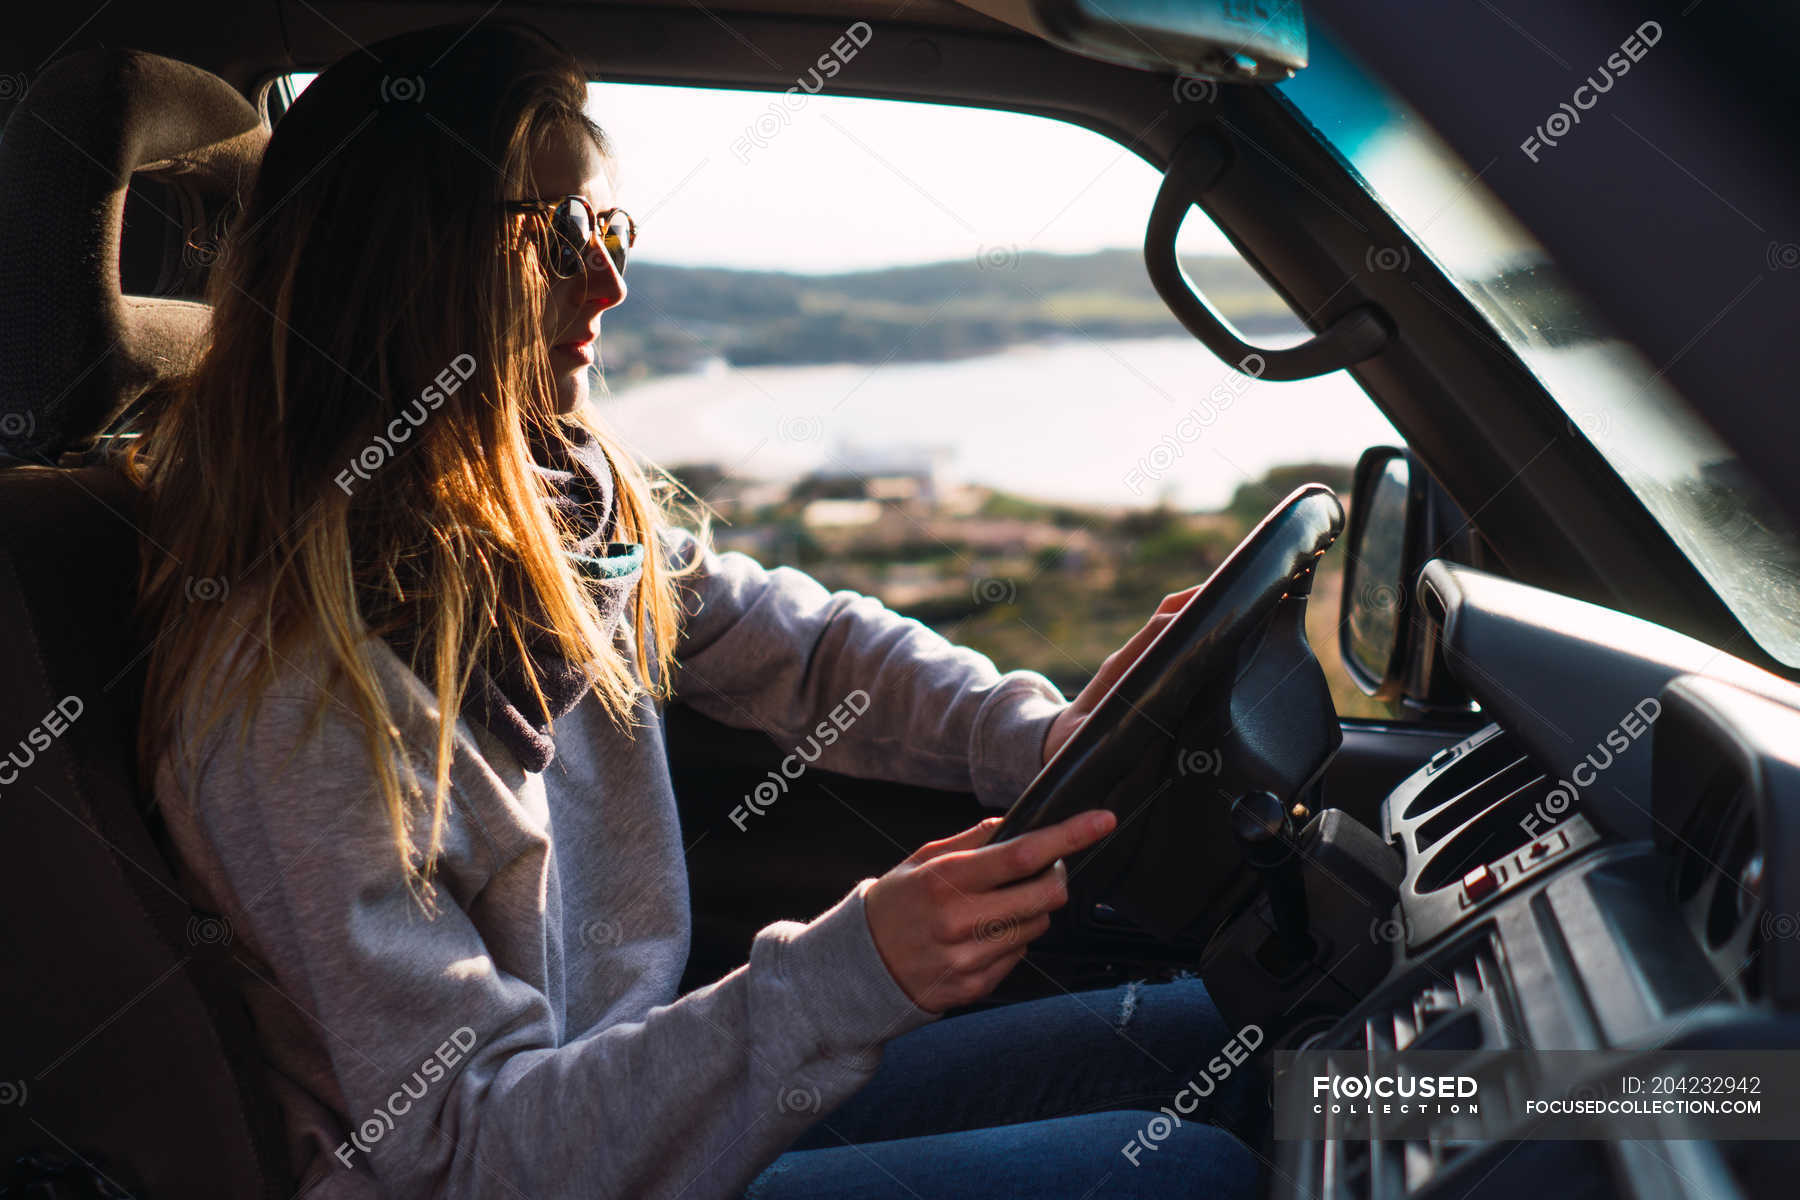 Bild von einer Frau Driver, stecken in eine Schlange von Autos, gerade erst  in ihr Auto wie gesehen in die Außenspiegel des Fahrzeugs vor  Stockfotografie - Alamy